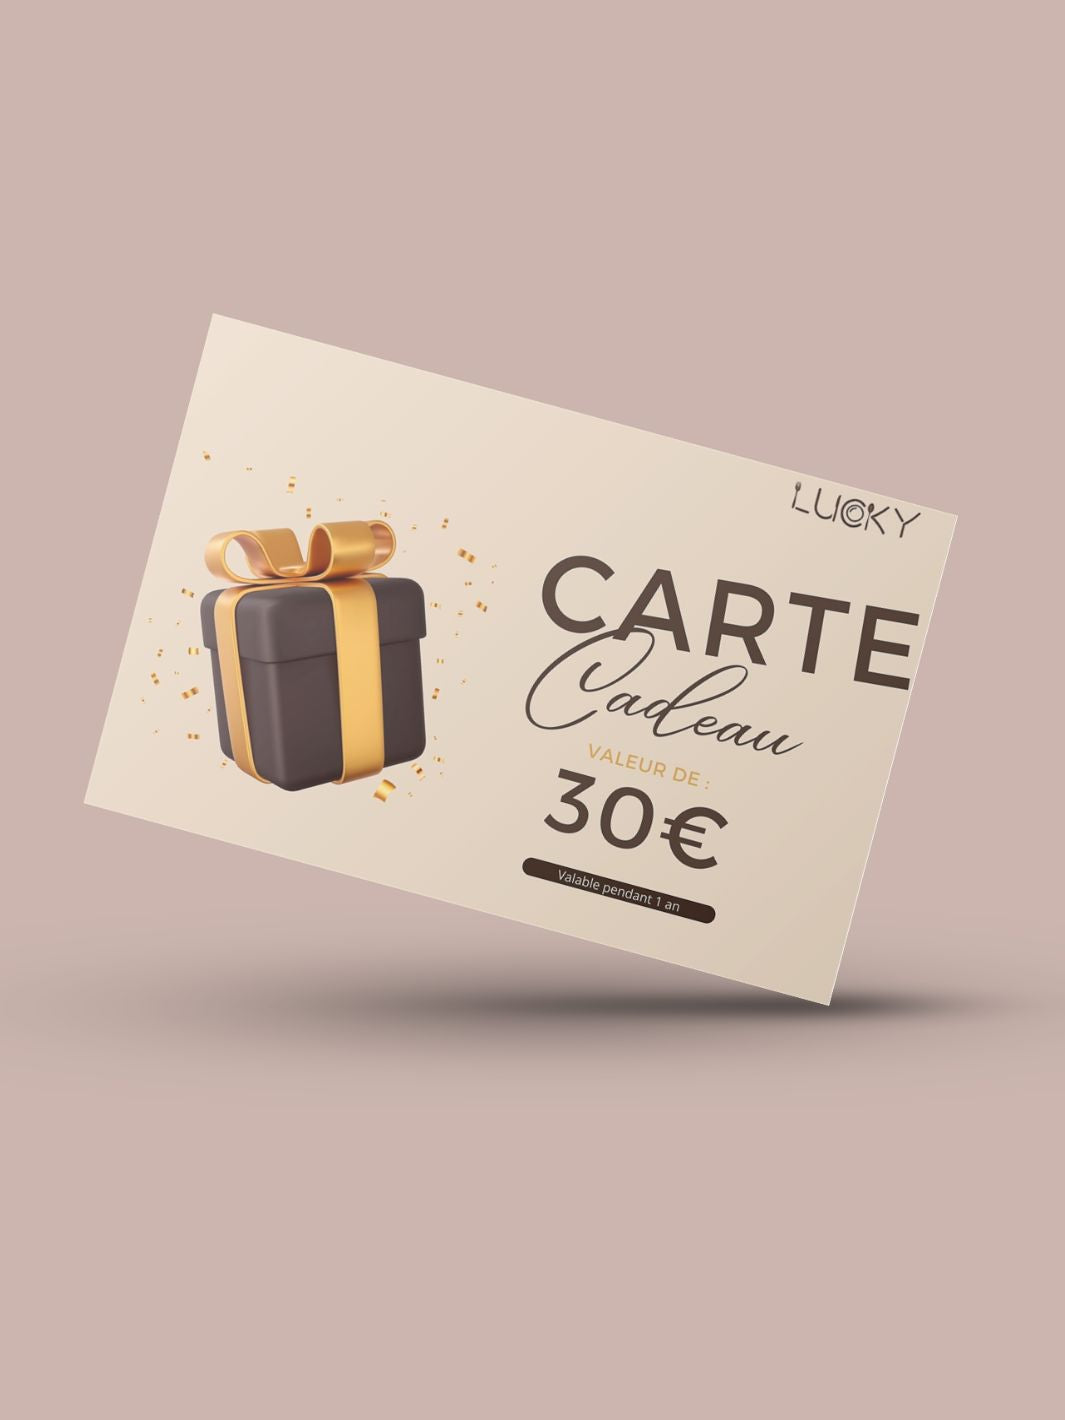 Lucky - Carte cadeau 30€ - 30€ - Lucky-eats